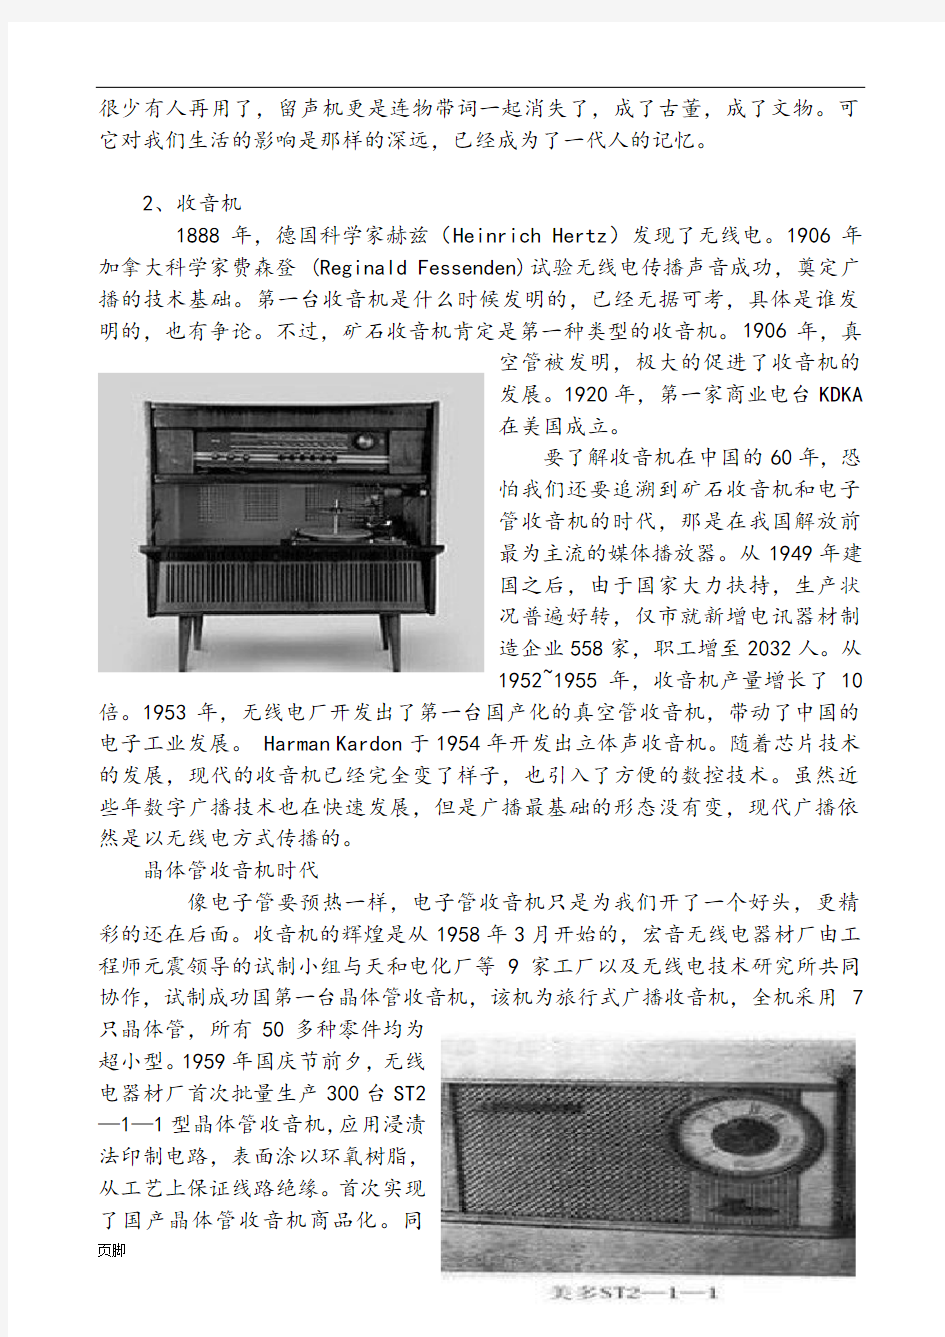 中国民生百年变迁--音乐播放器的历史